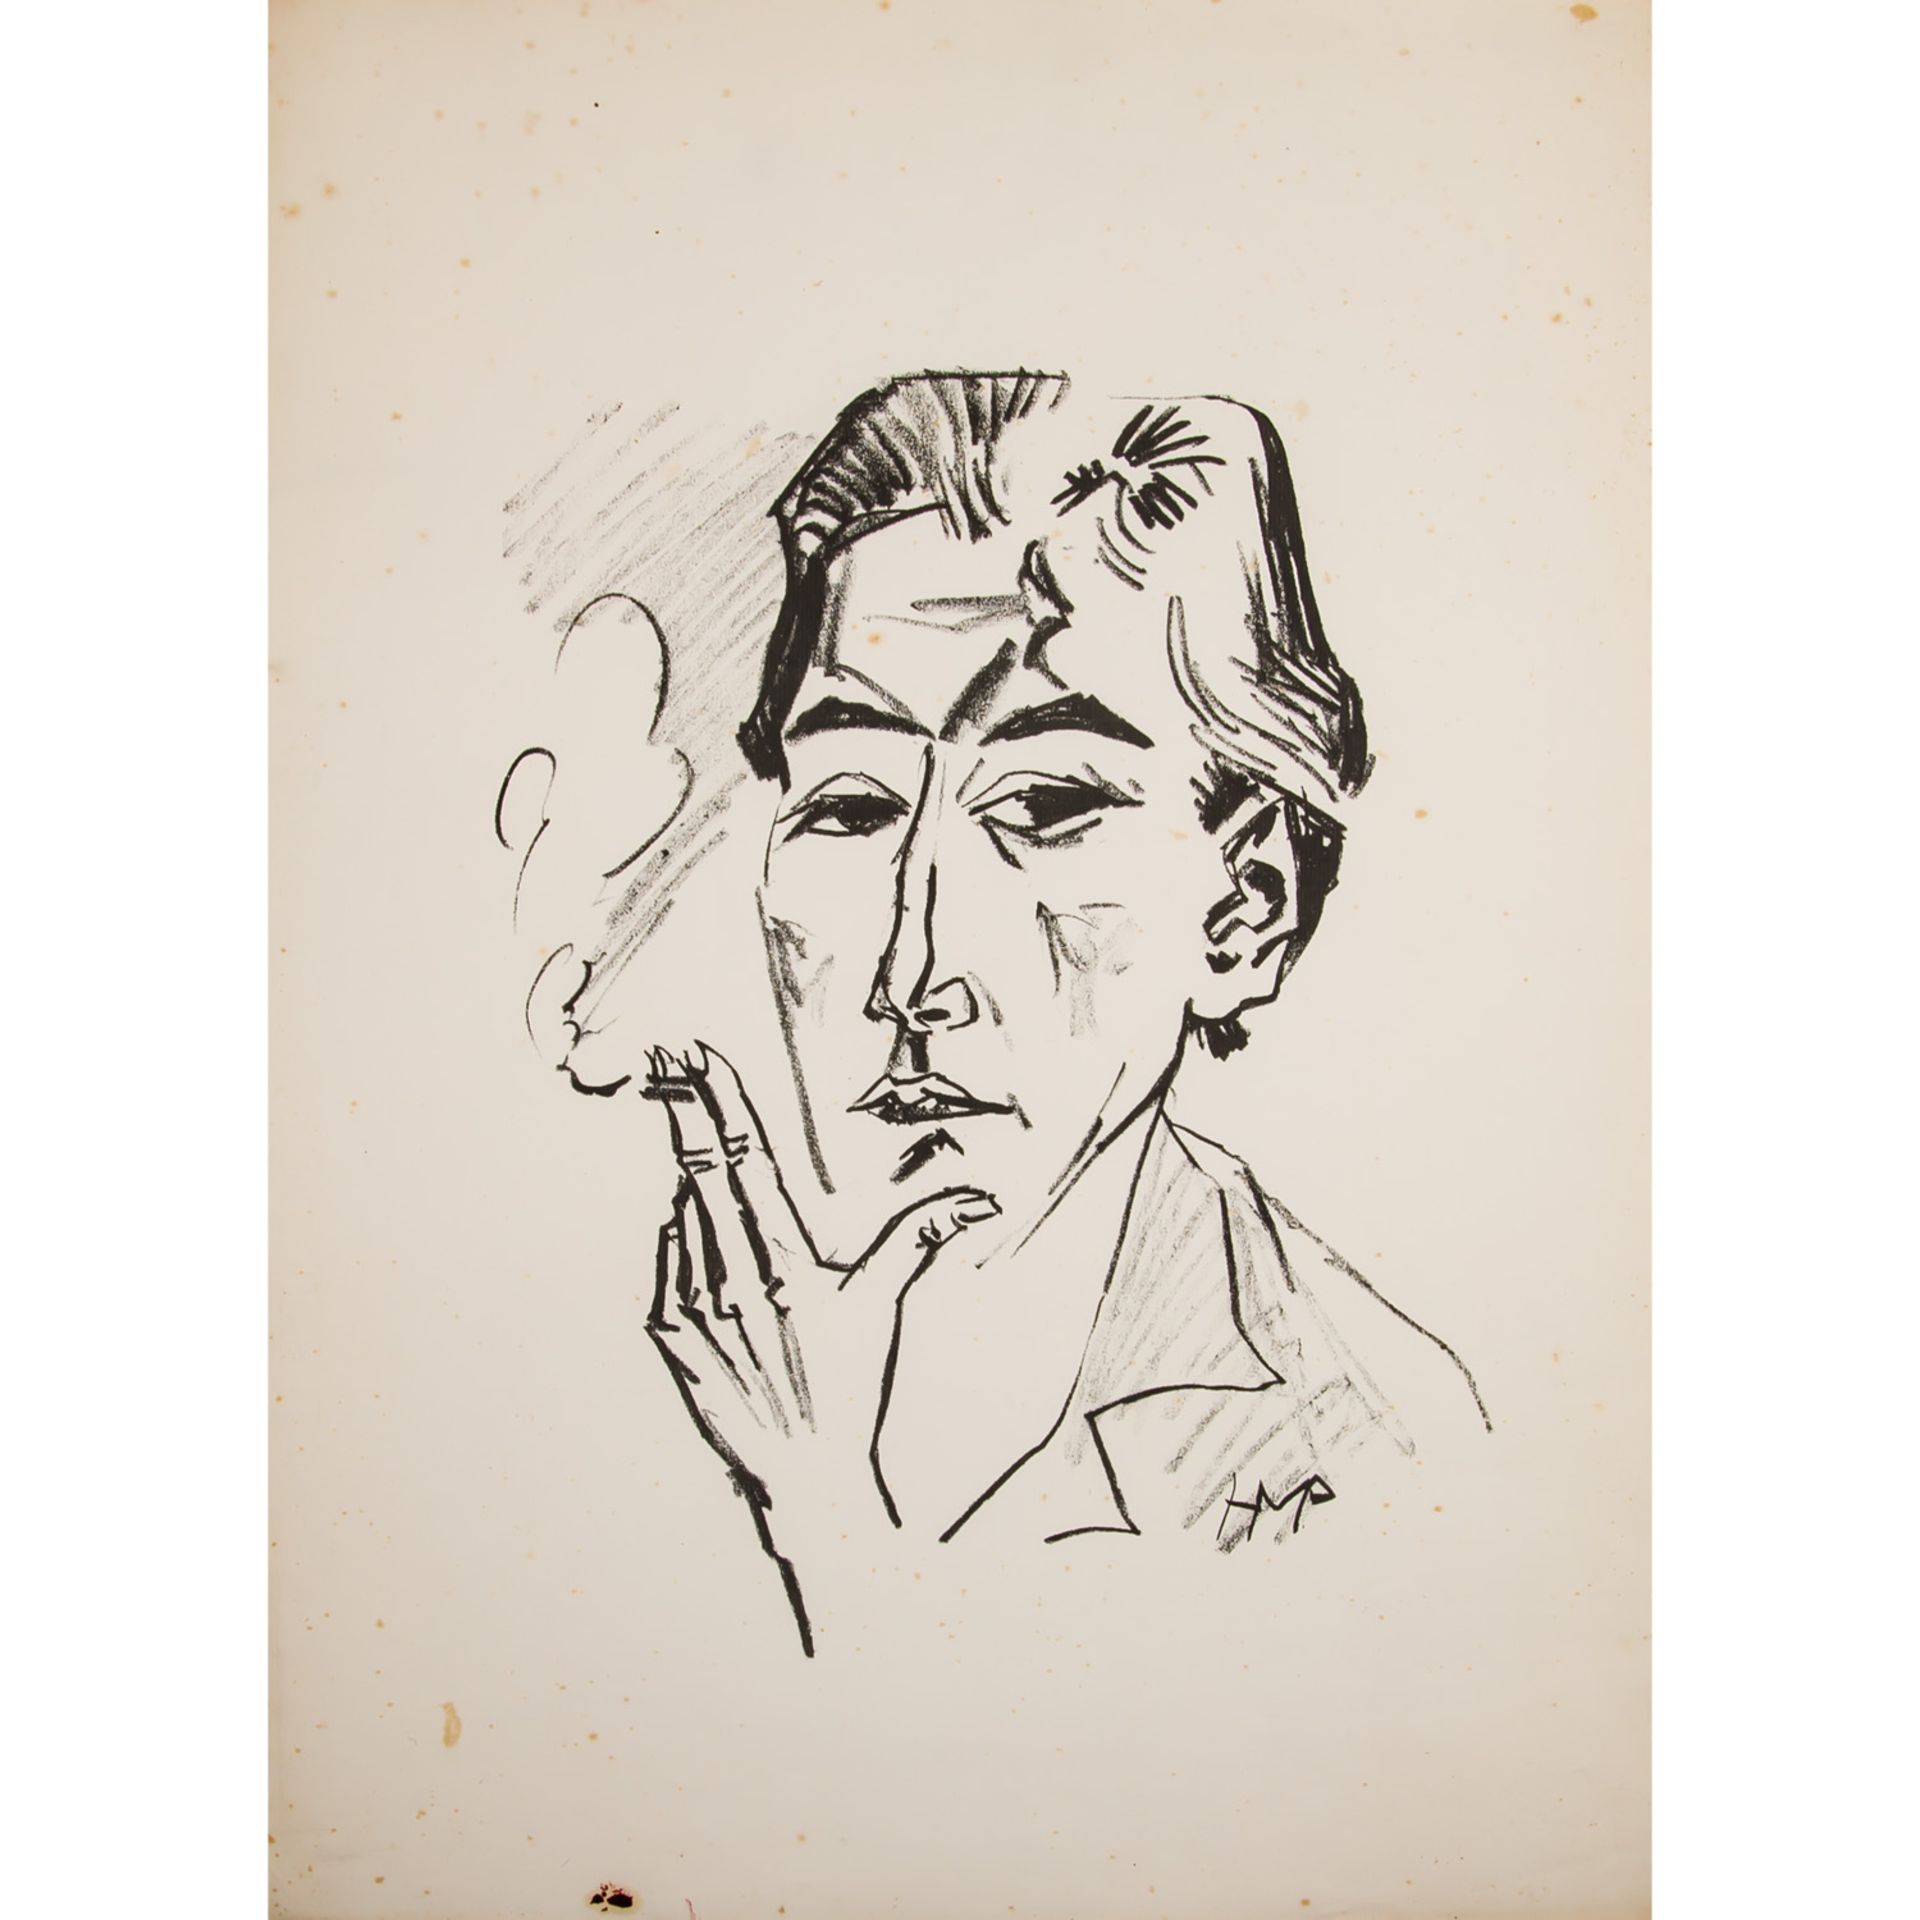 PECHSTEIN, HERMANN MAX (1881-1955), "Rauchende",